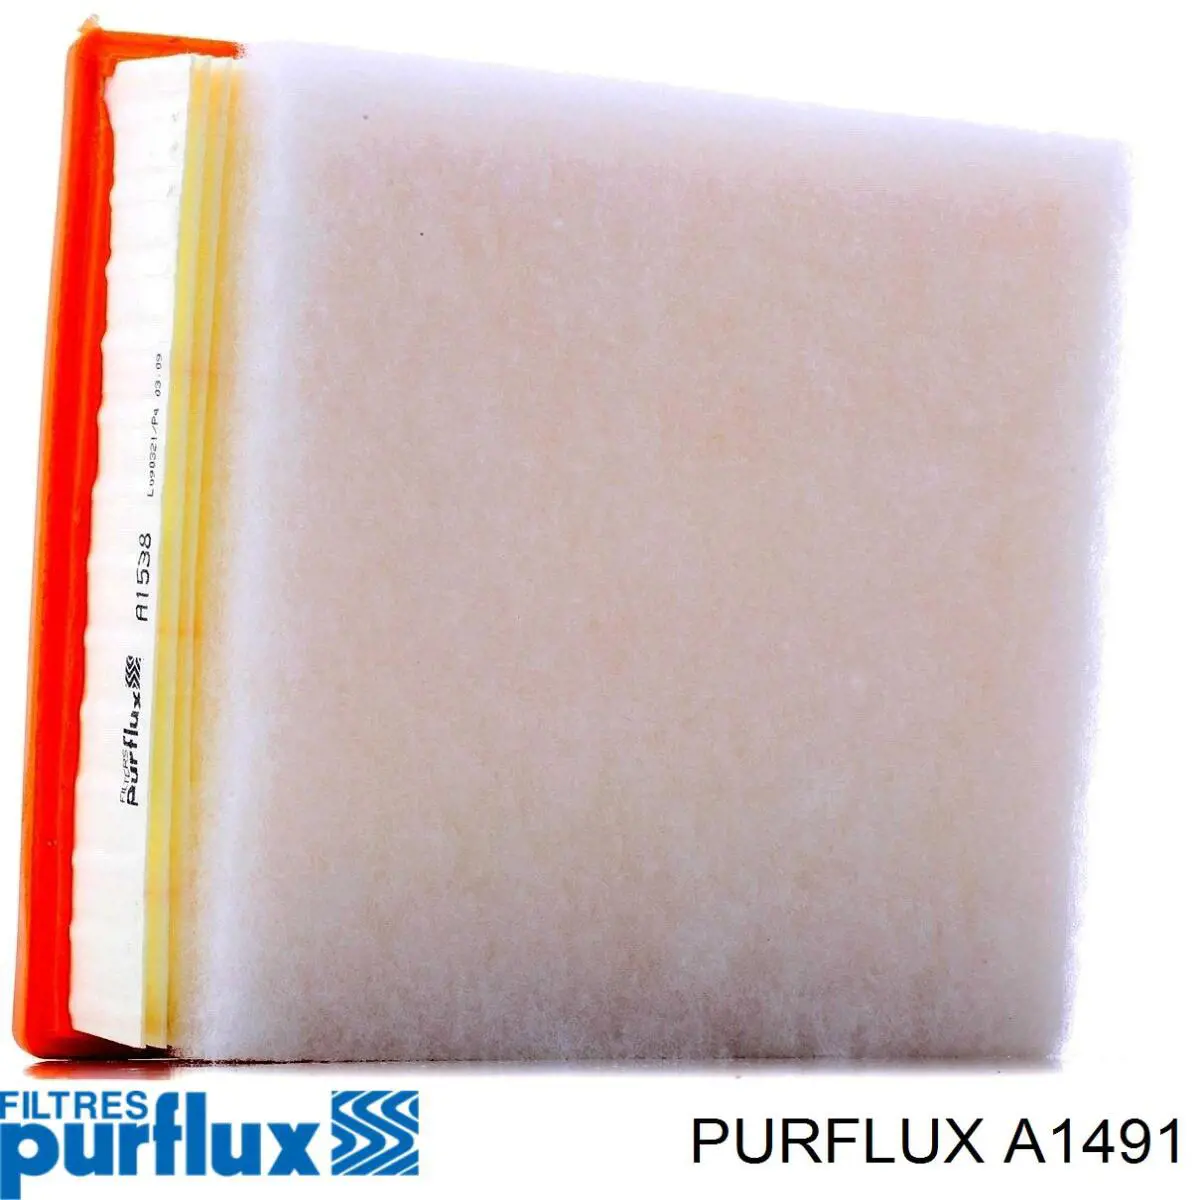 A1491 Purflux filtro de aire